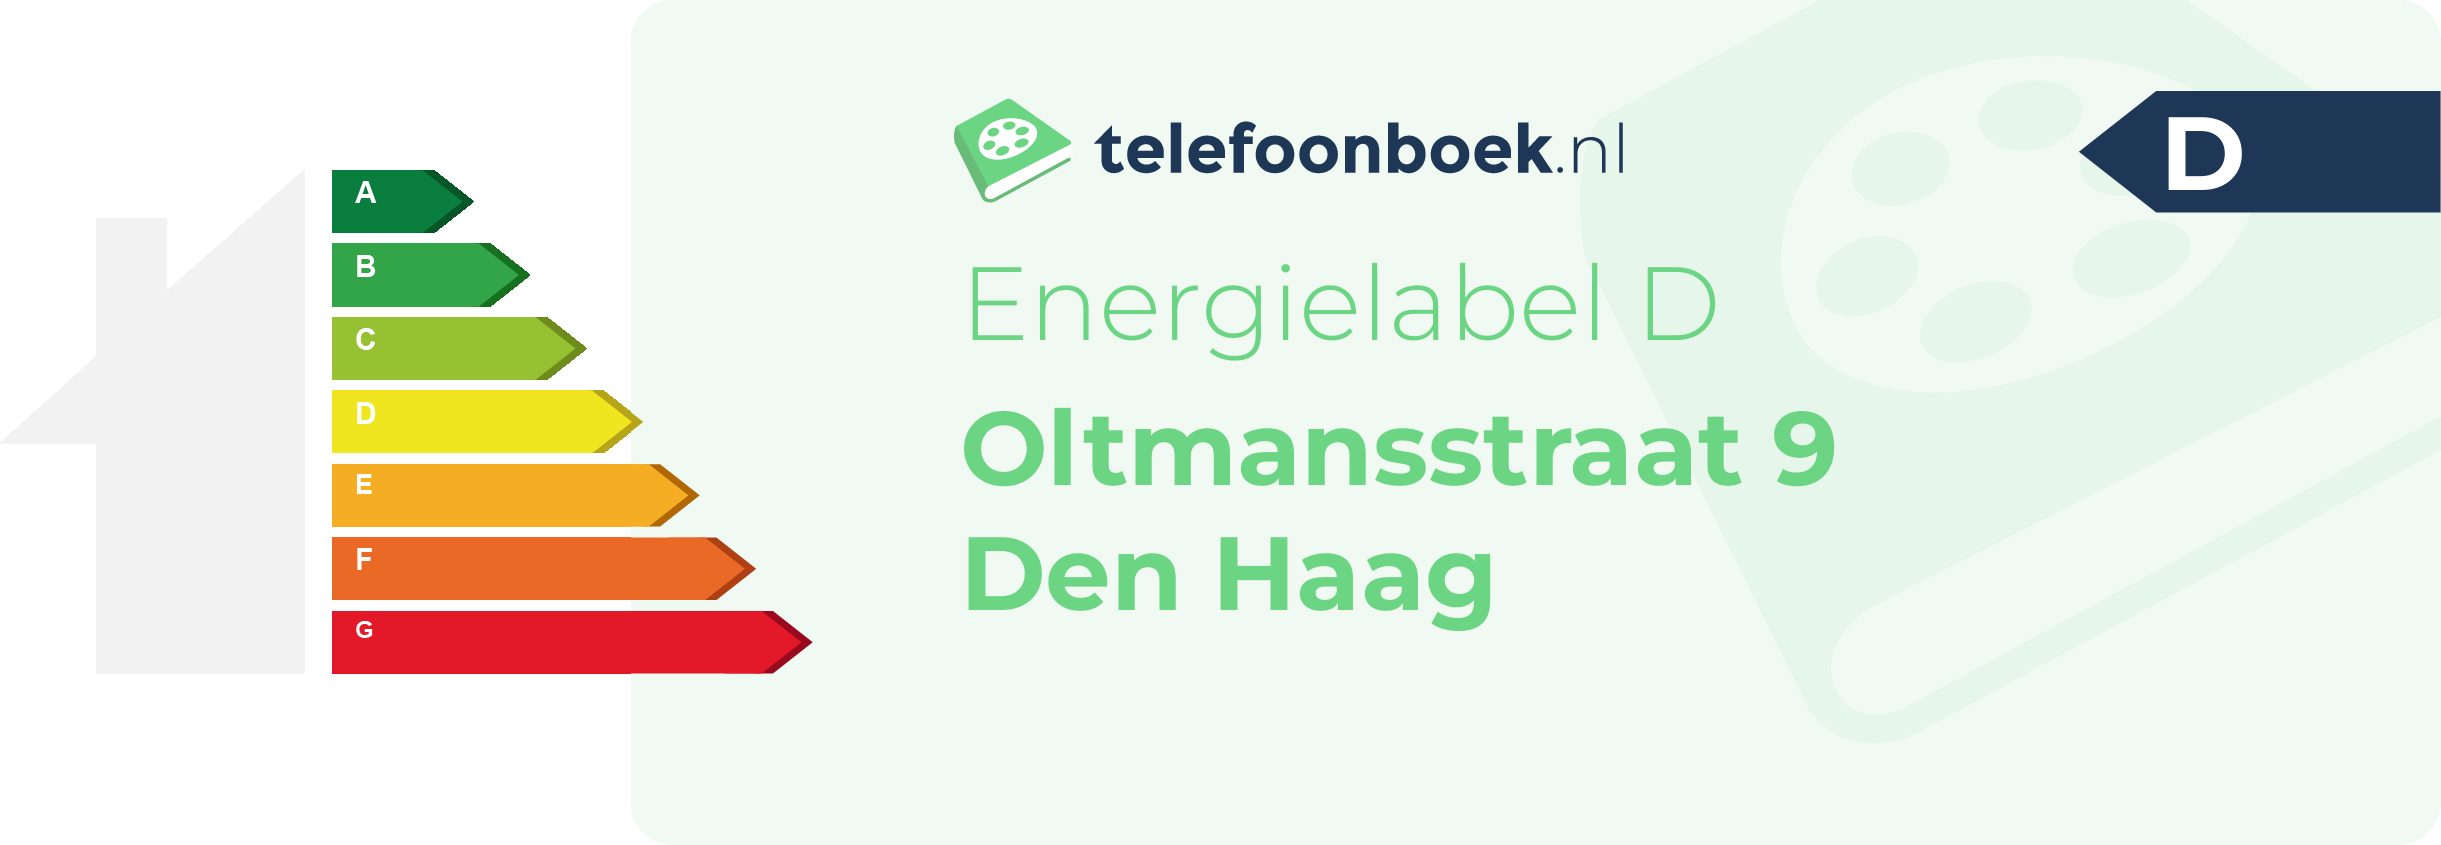 Energielabel Oltmansstraat 9 Den Haag